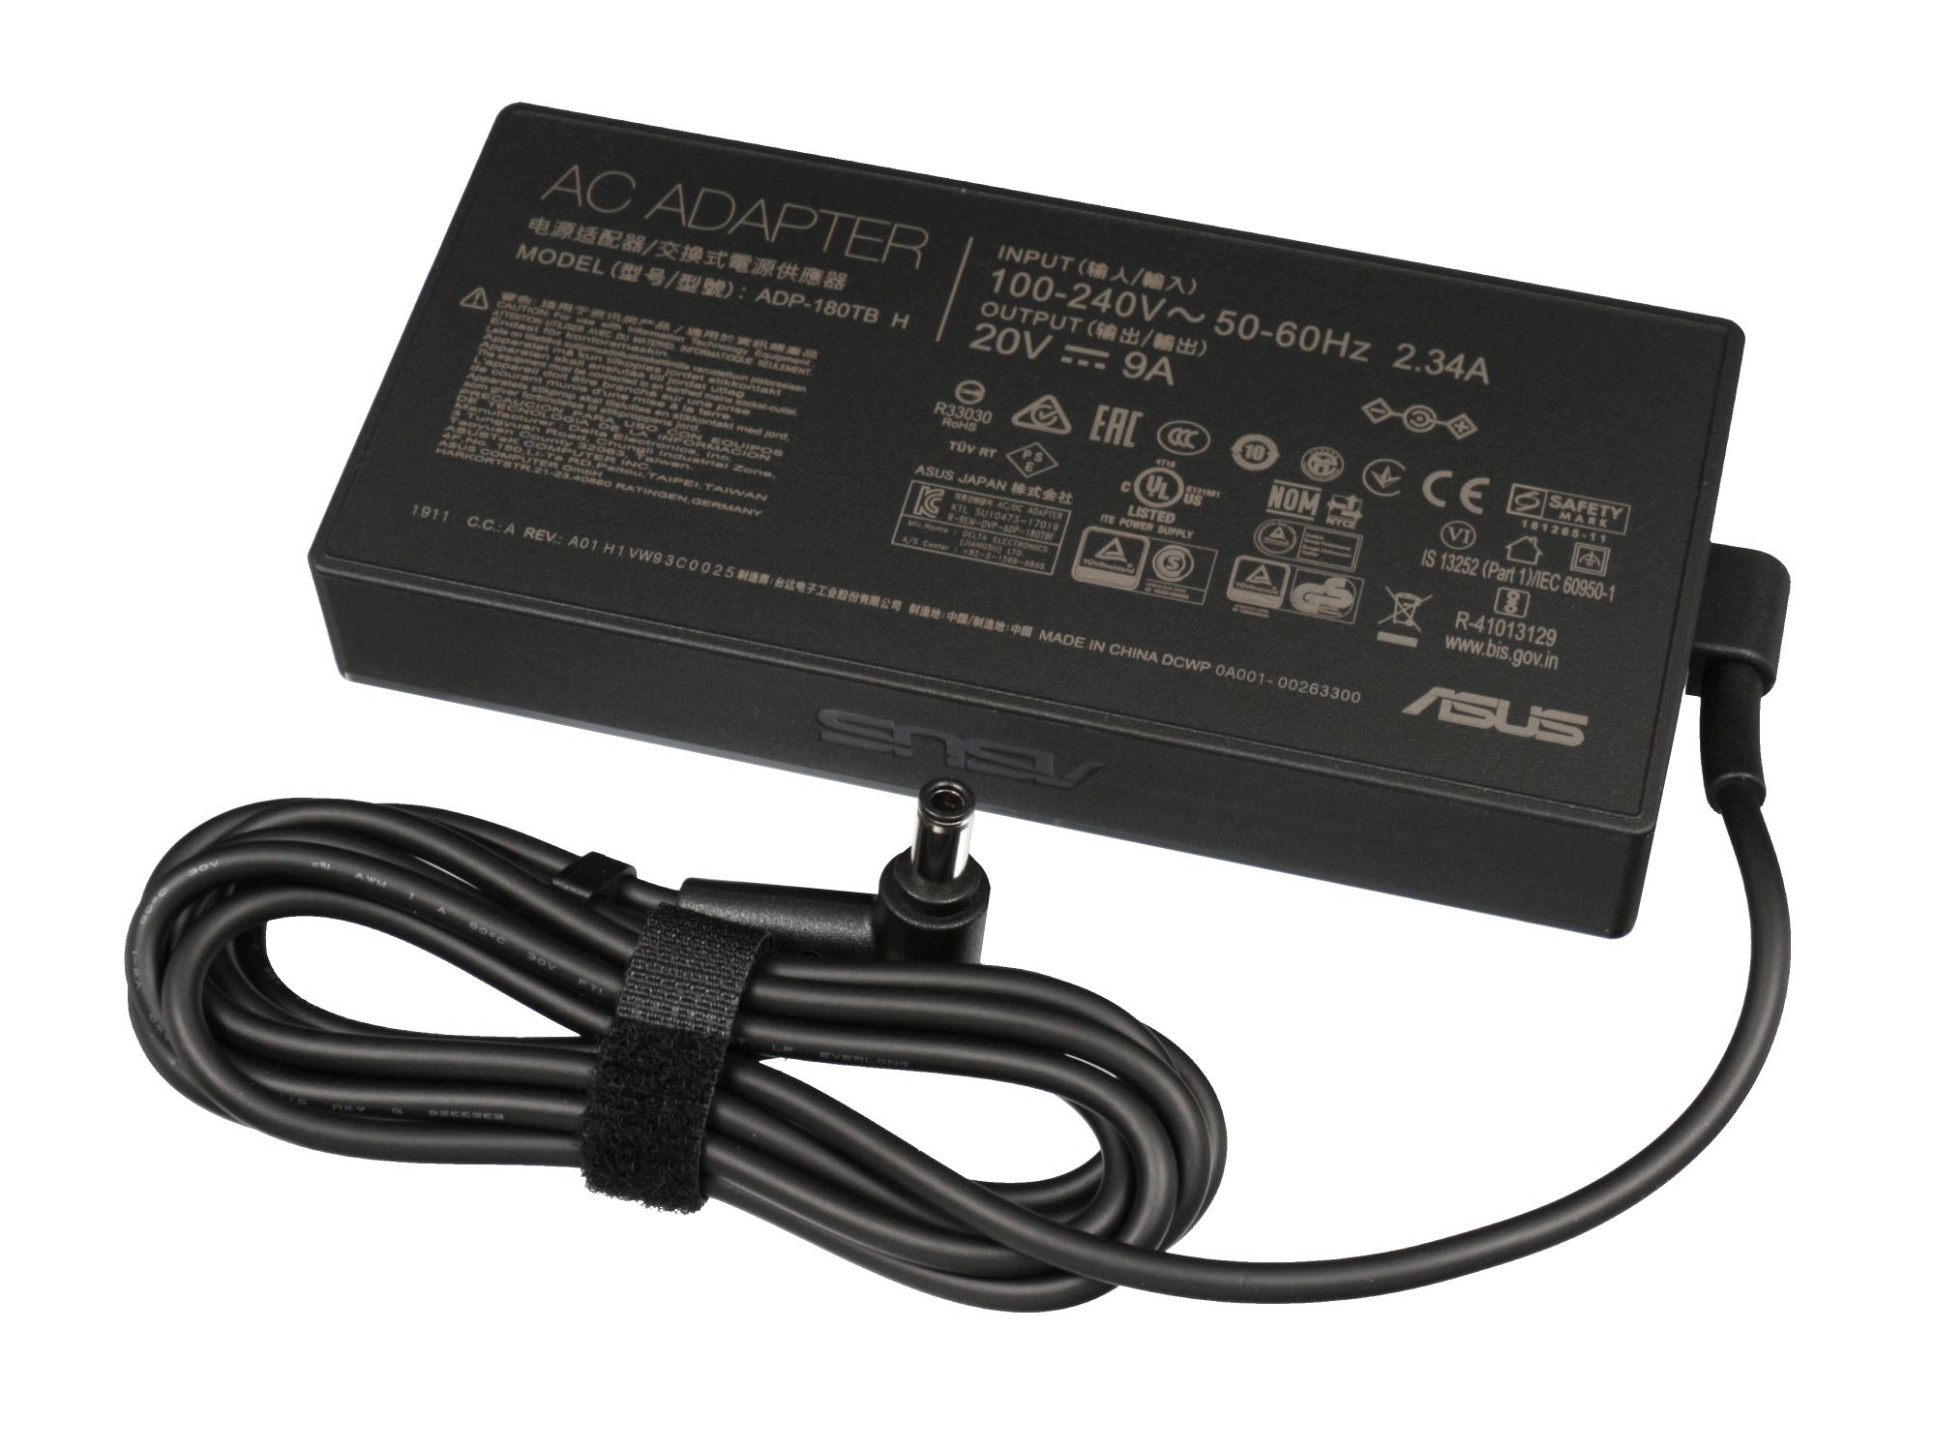 ASUS 0A001-00262100 kantiges Original Netzteil Watt 180